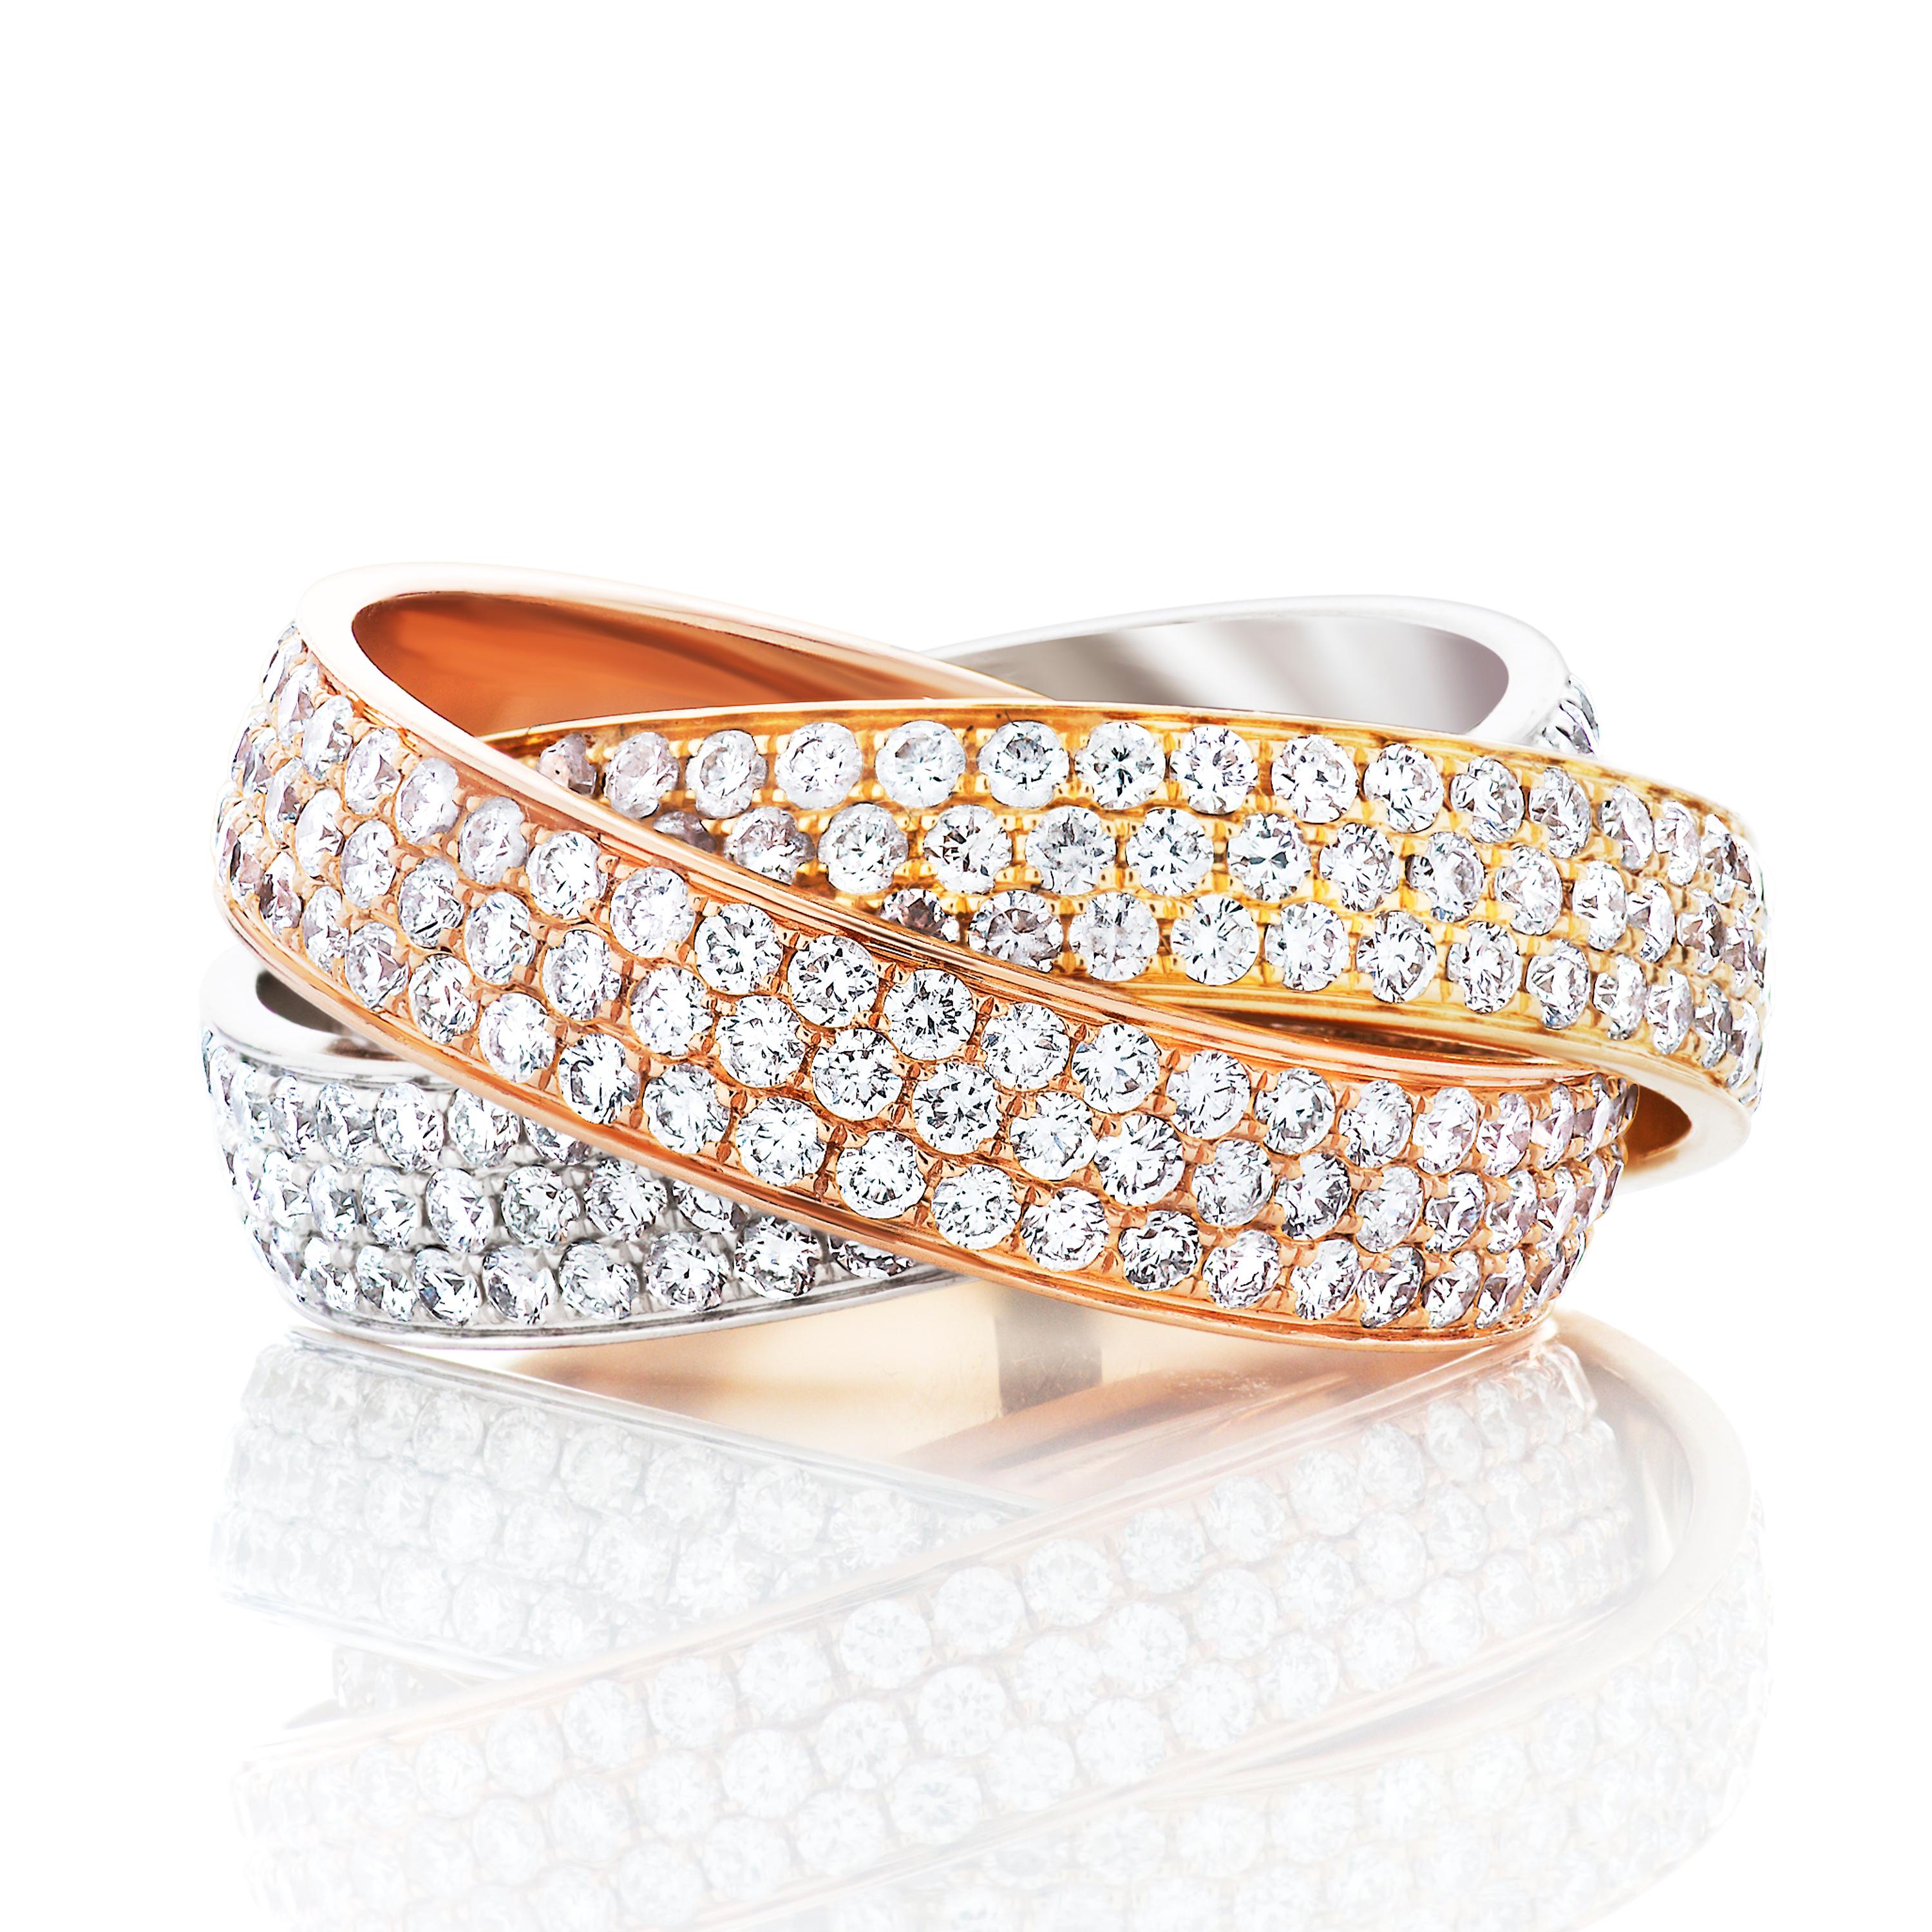 Bague roulante Trinity en diamants Cartier grand modèle en or blanc, jaune et rose 18k. 

Cette bague Cartier est composée de 3 anneaux imbriqués et pavés d'environ 4,64 carats de diamants ronds de taille brillant. Elle est accompagnée d'un